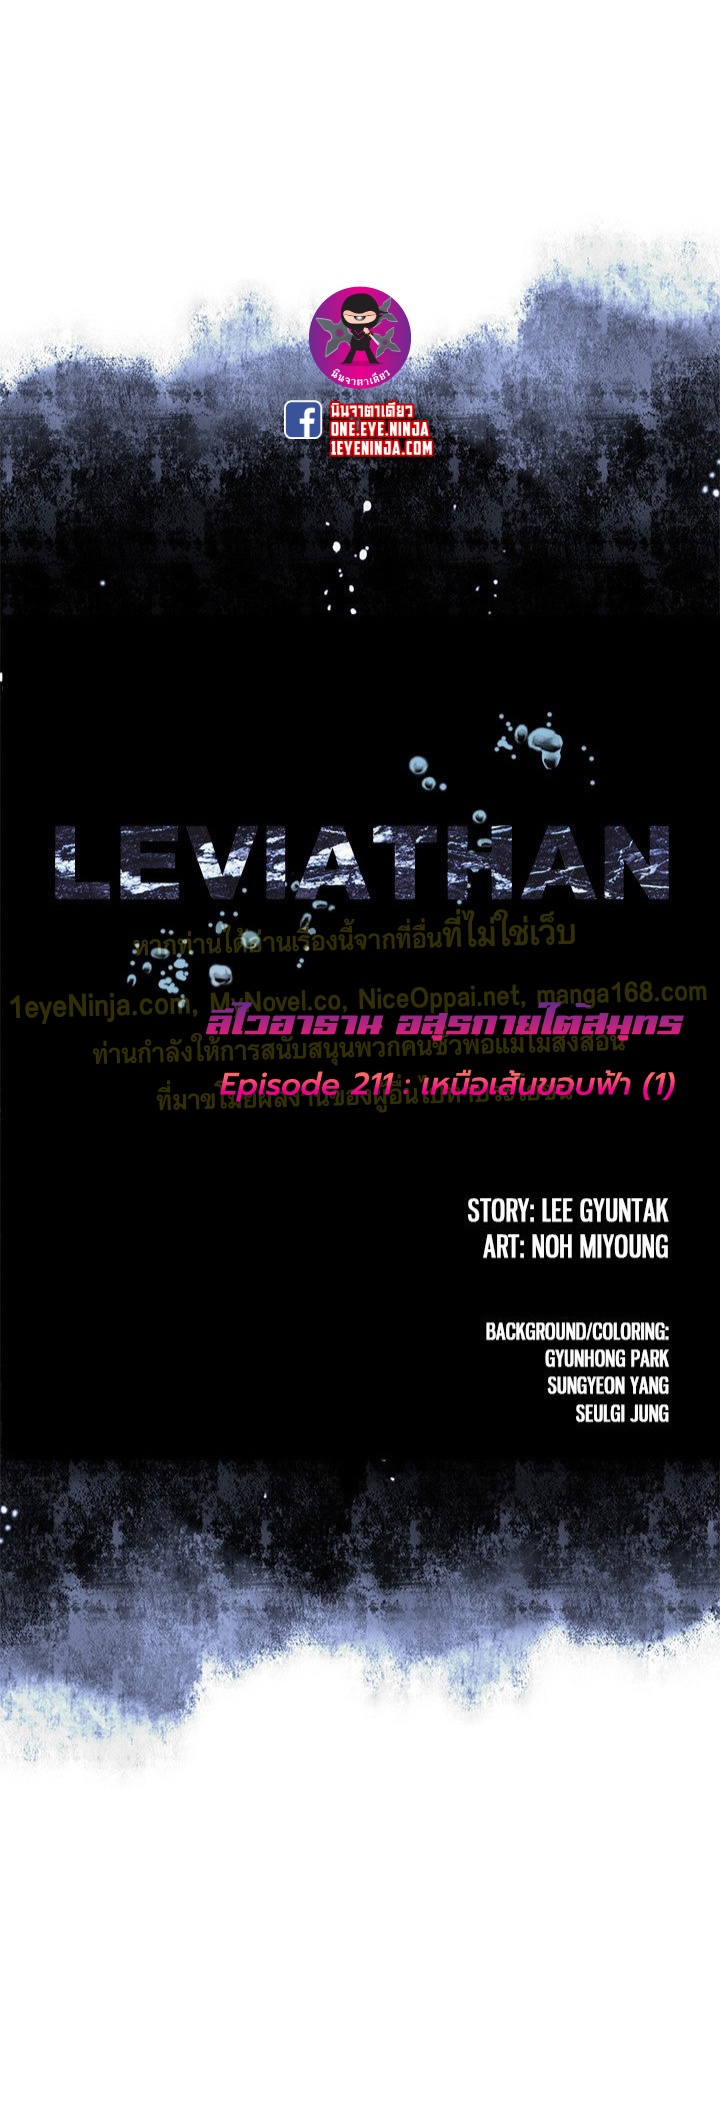 Leviathan211 01